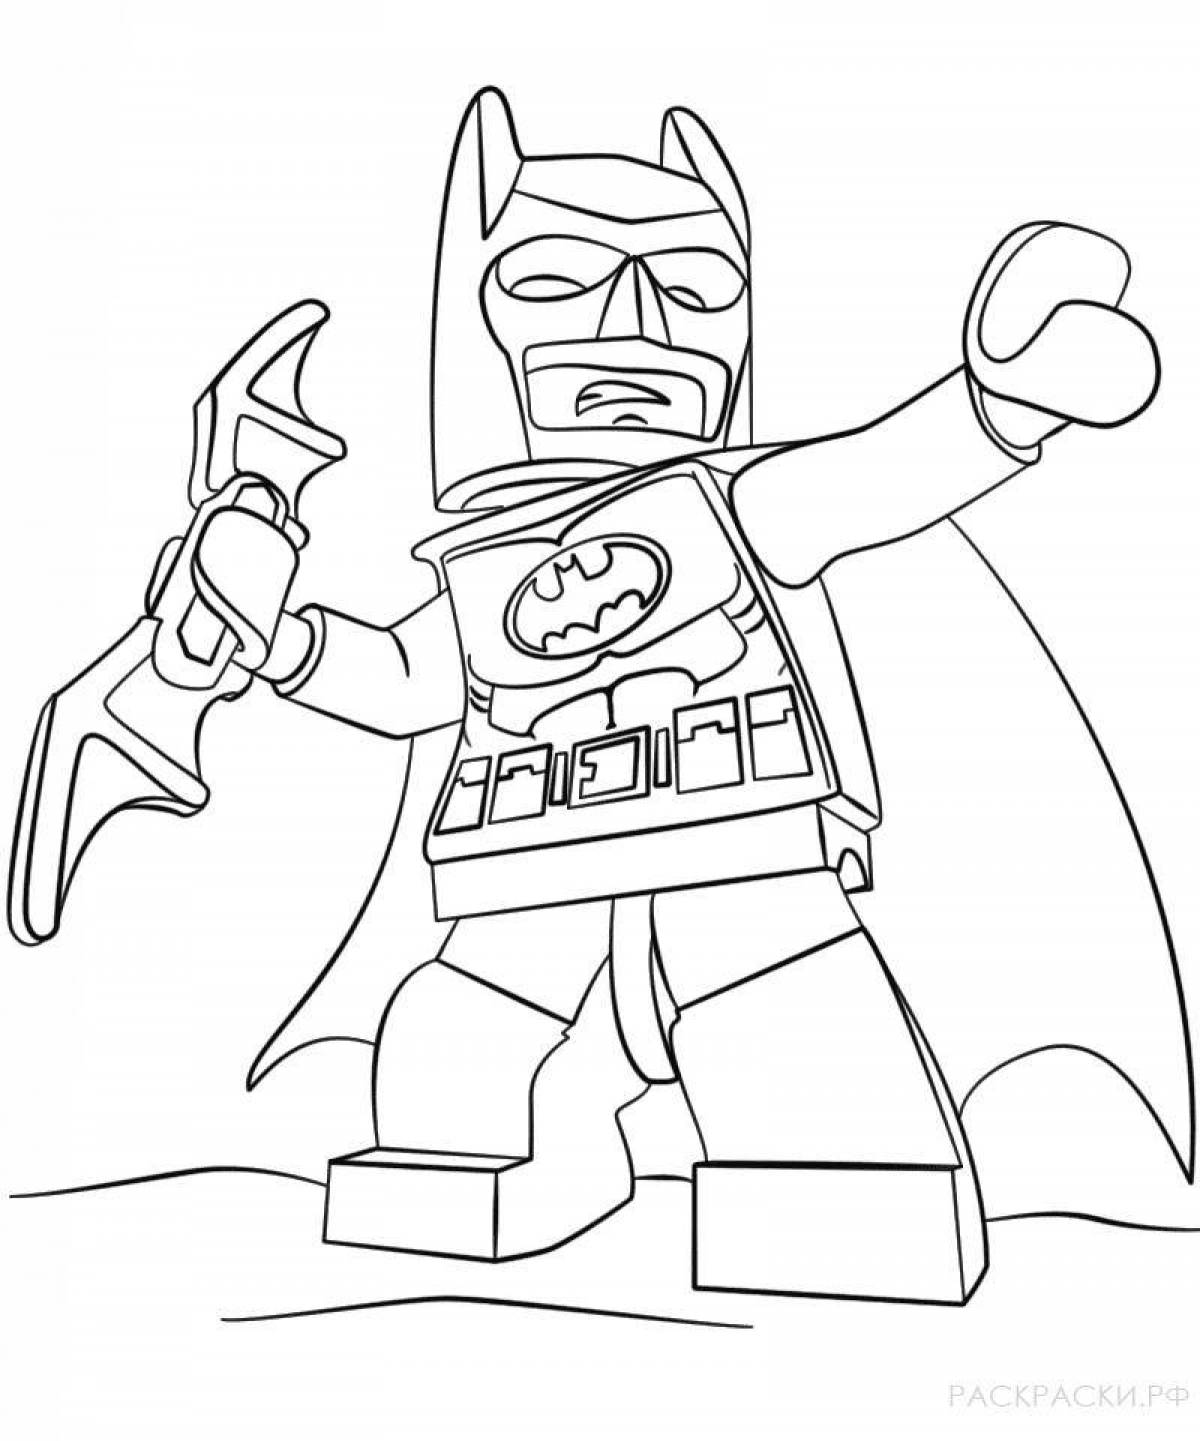 Лего Бэтмен - скачать и распечатать раскраску. Бэтмен